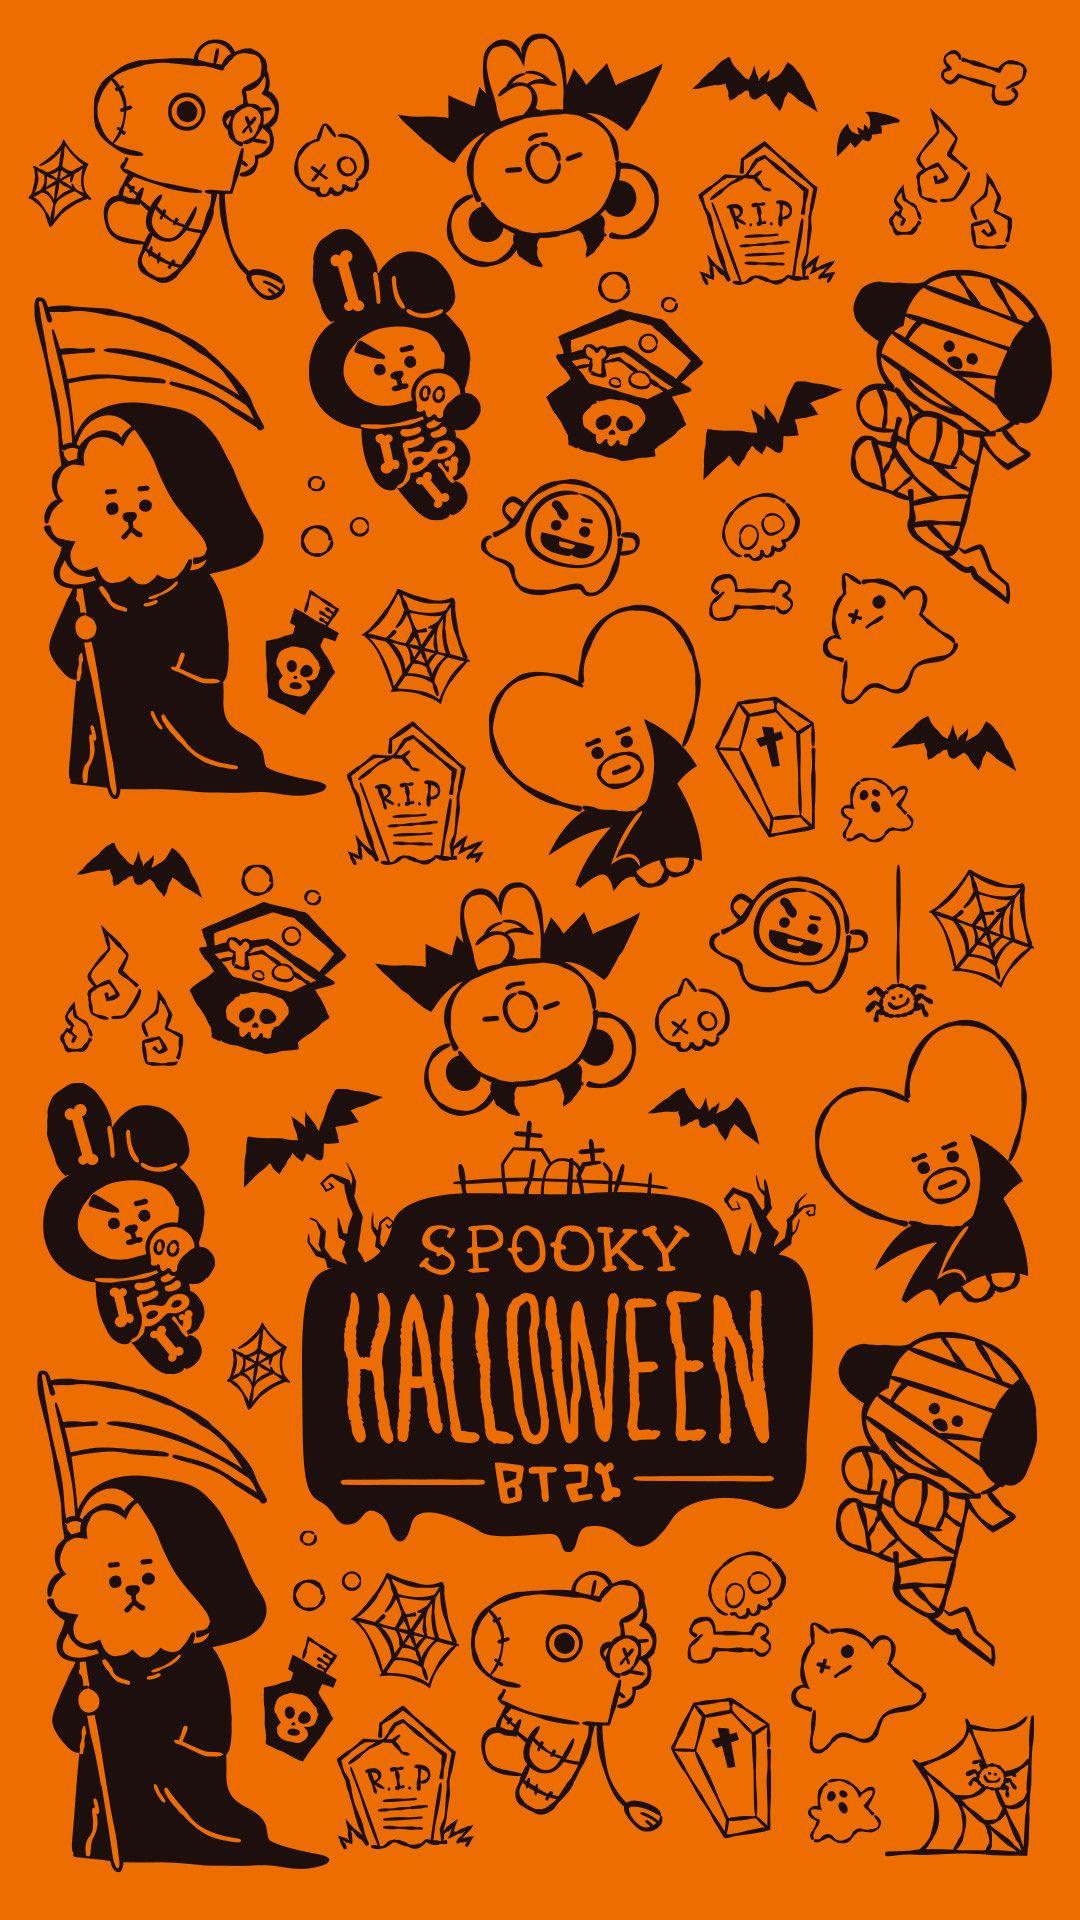 Spooky Halloween. Bts halloween, Line friends, Halloween wallpaper